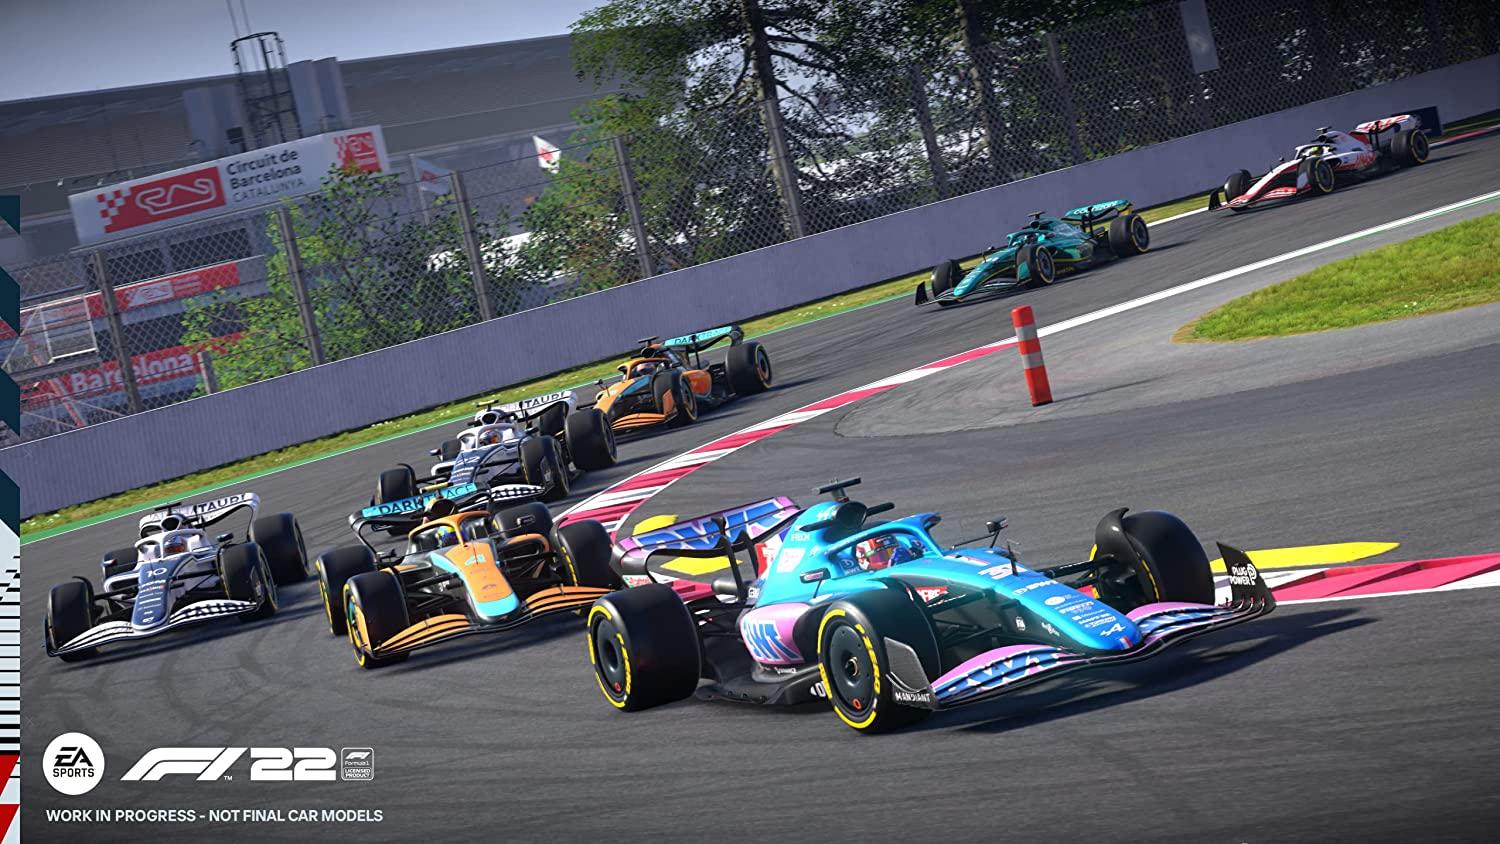 F1 2022 (Xbox One) - GameStore.mt | Powered by Flutisat